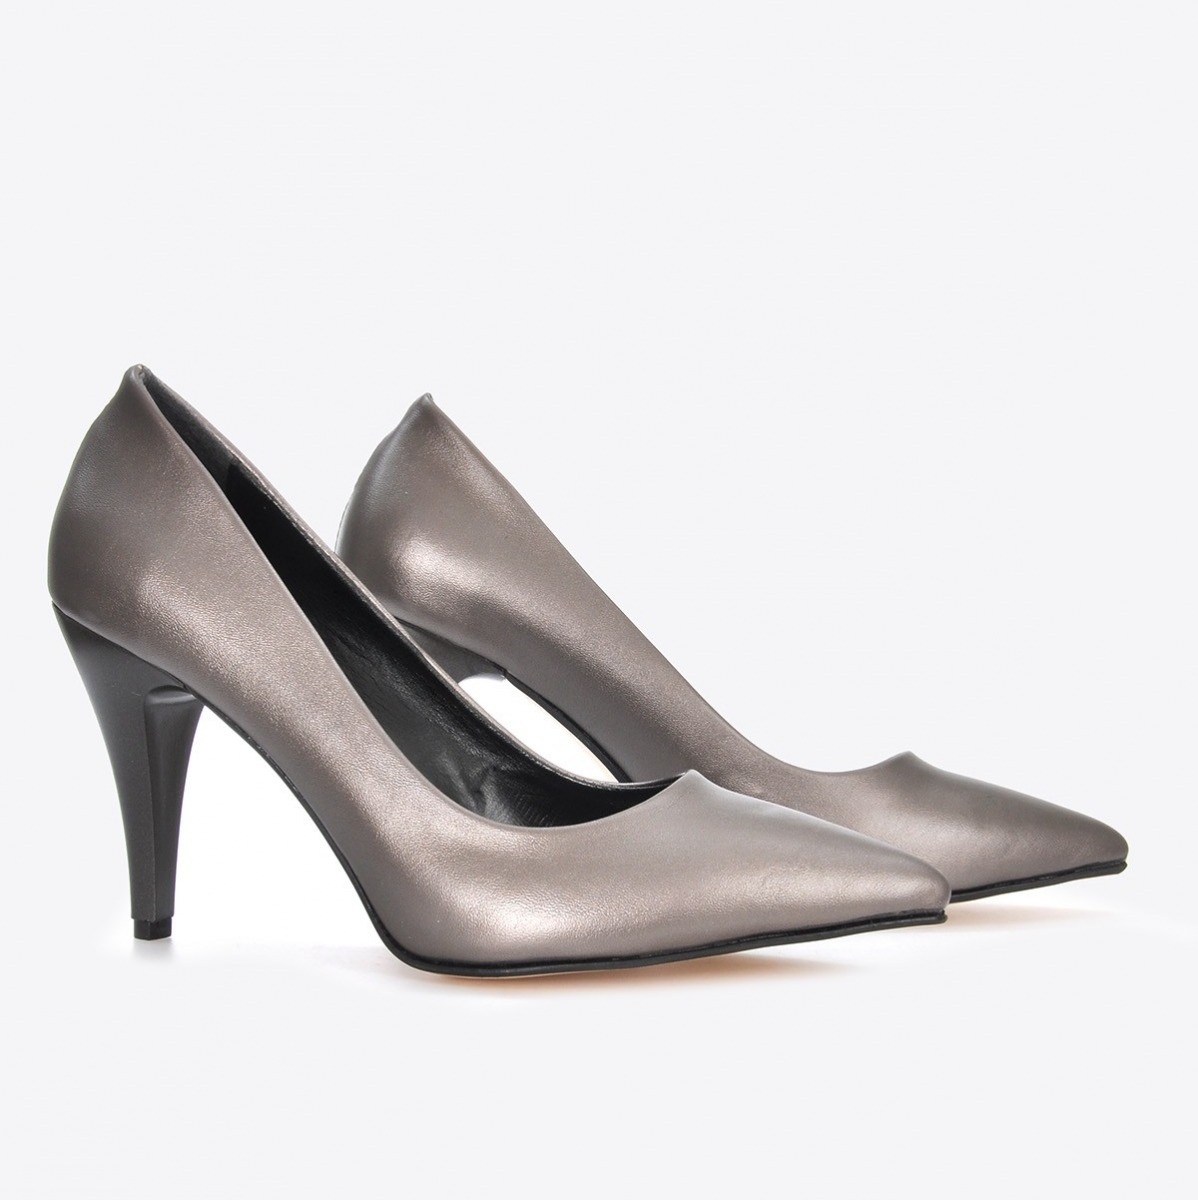 Flo Kadın Platin Klasik Topuklu Ayakkabı VZN21-007Y. 4